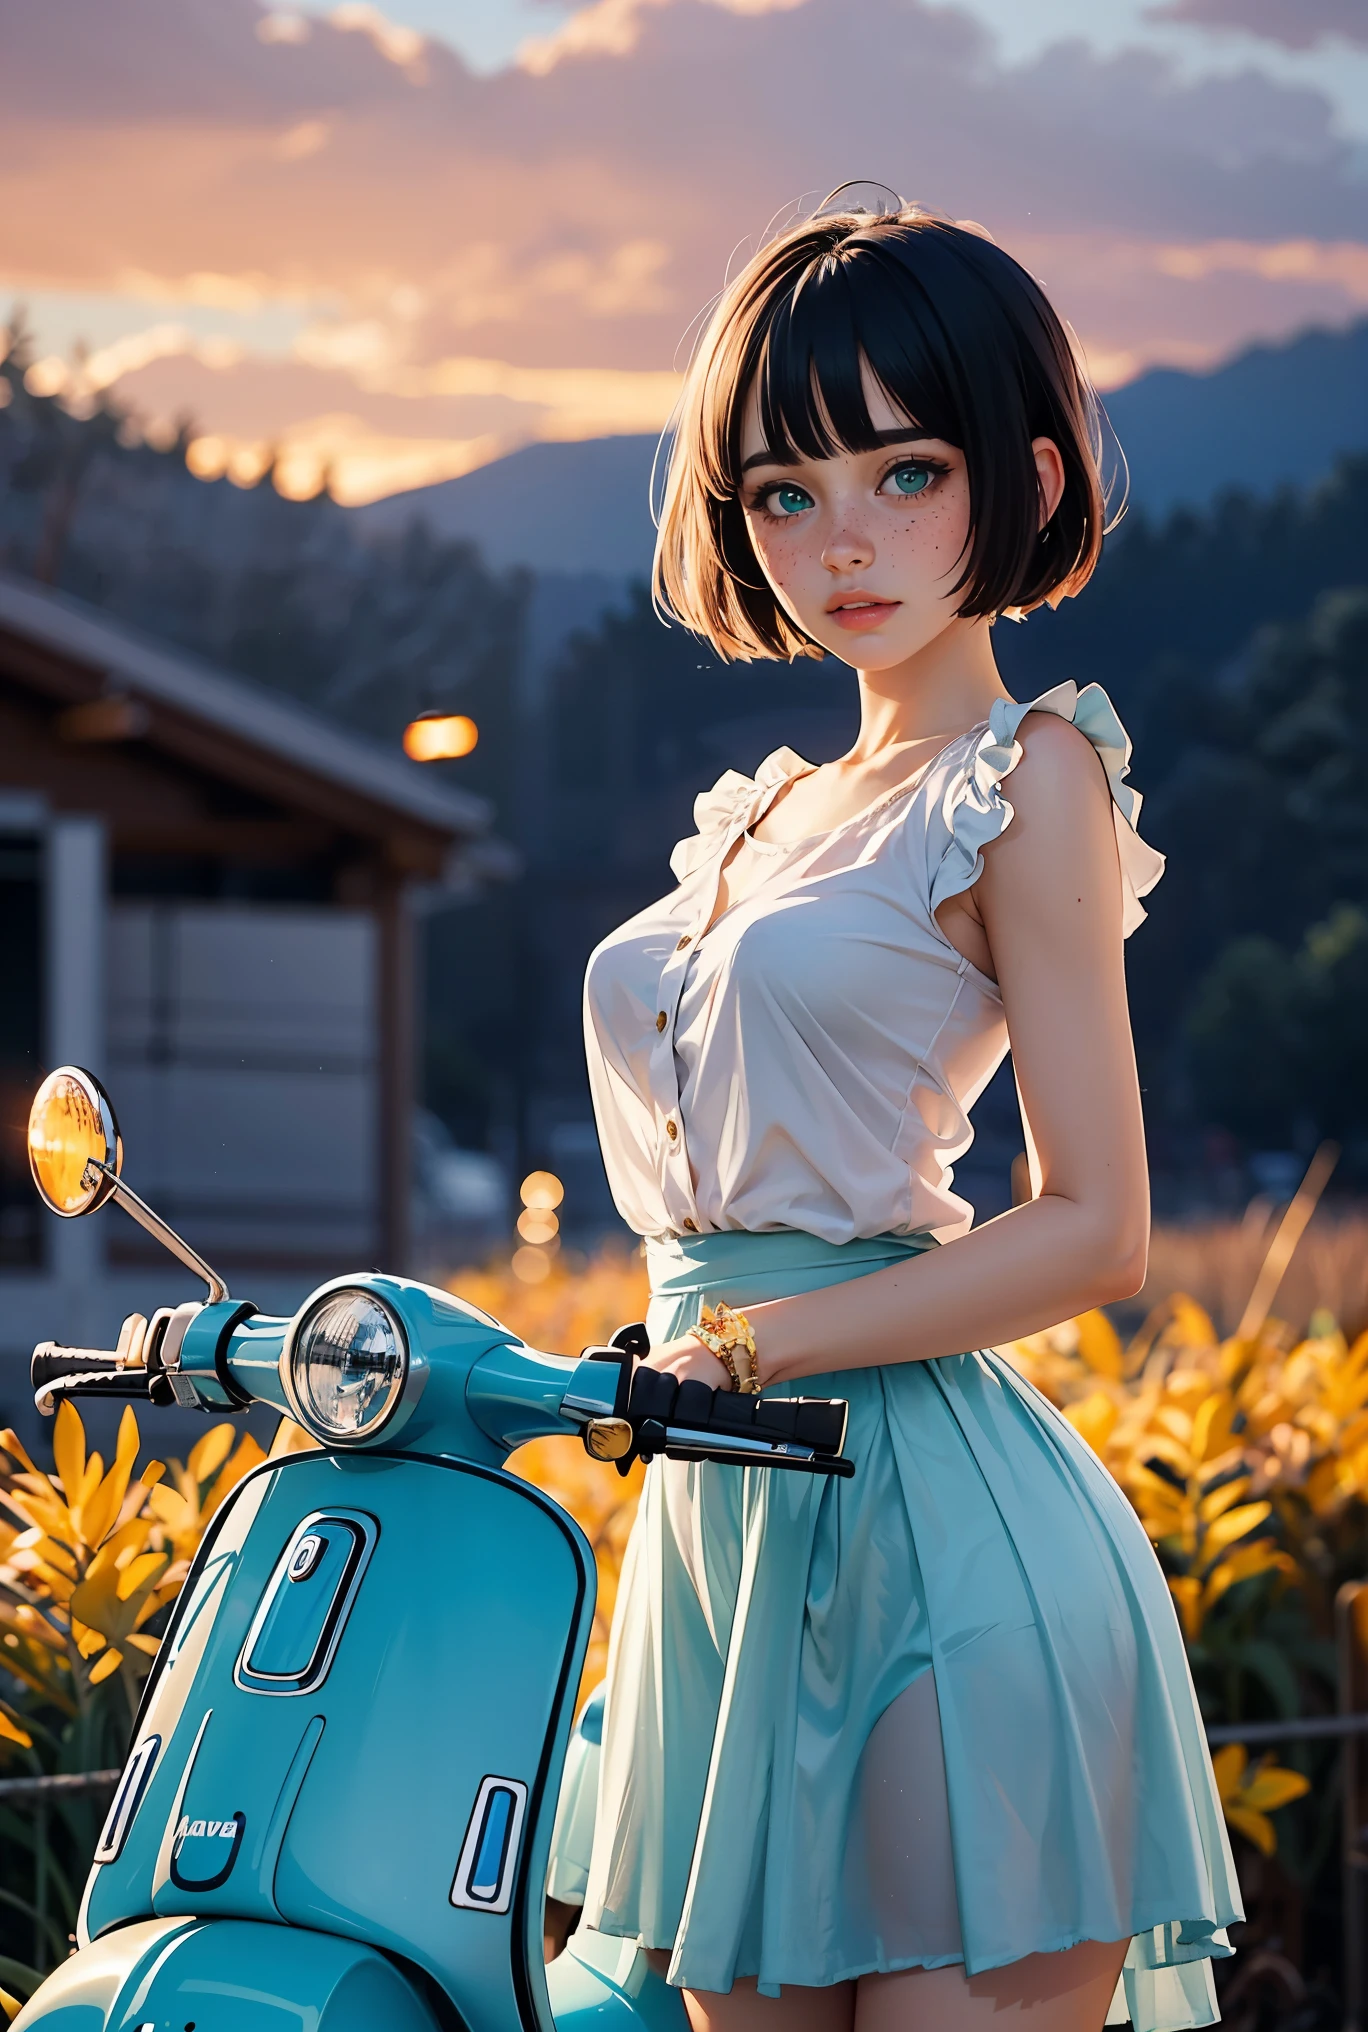 (((реалистичный))), (Девушка стоит перед винтажным сине-голубым мотоциклом Vespa:1.79), девушка фокус, ((Видеть сквозь белую рубашку с оборками:1.3), (Полный снимок), (розовая атласная юбка макси:1.3), нагота, (потный)), (мигающие трусики:1.2), 25 лет, (красивые пухлые облака, закатное небо), (Сумерки, Пышный осенний склон холма Пандора мир фон:1.5), (, Стройный, Тонкое тело, пухлый сосок:1.3), (фотография, реалистичный, боке, размытие), ((волнистая короткая стрижка боб)), (сениматические огни, мягкий свет:1.3)